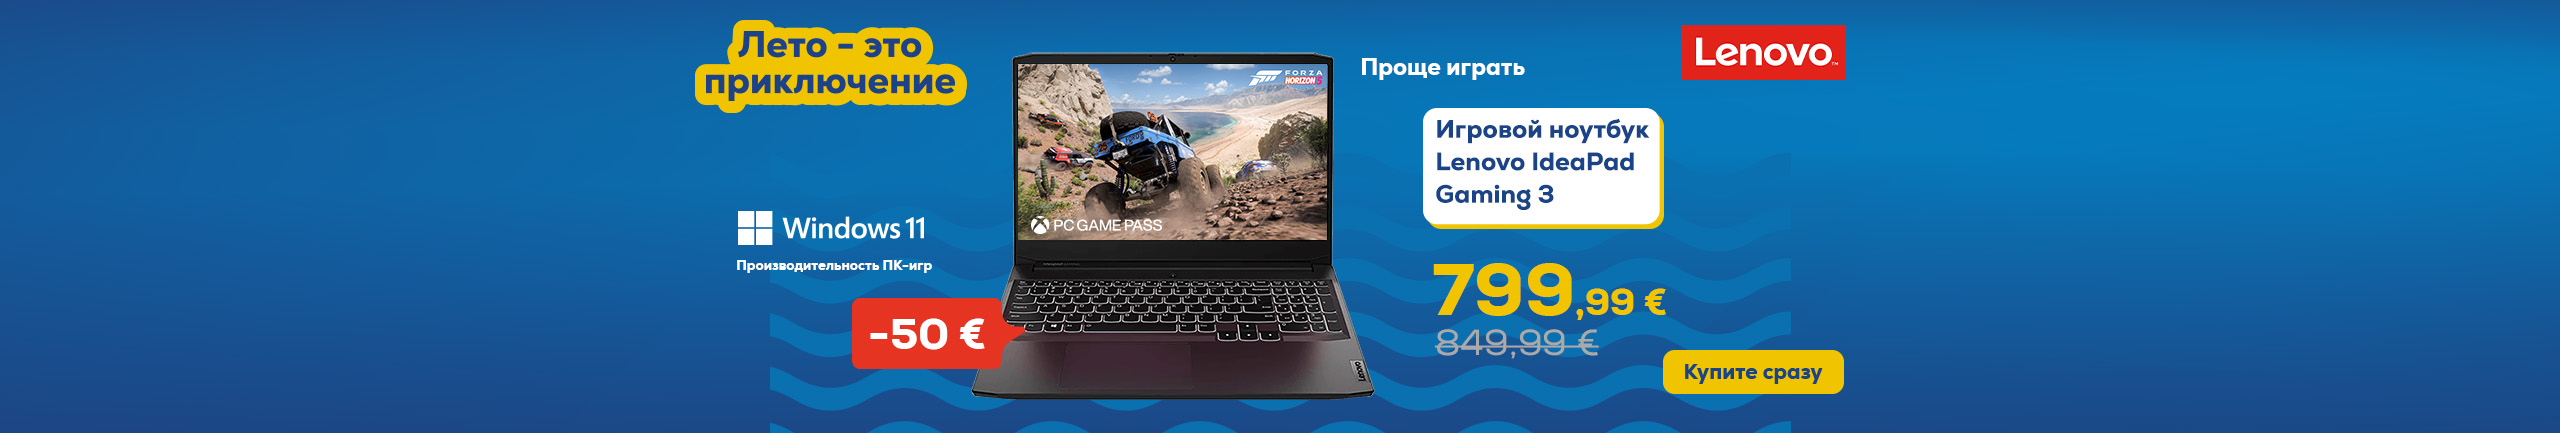 Лето – это приключение. Игровой ноутбук Lenovo IdeaPad Gaming 3